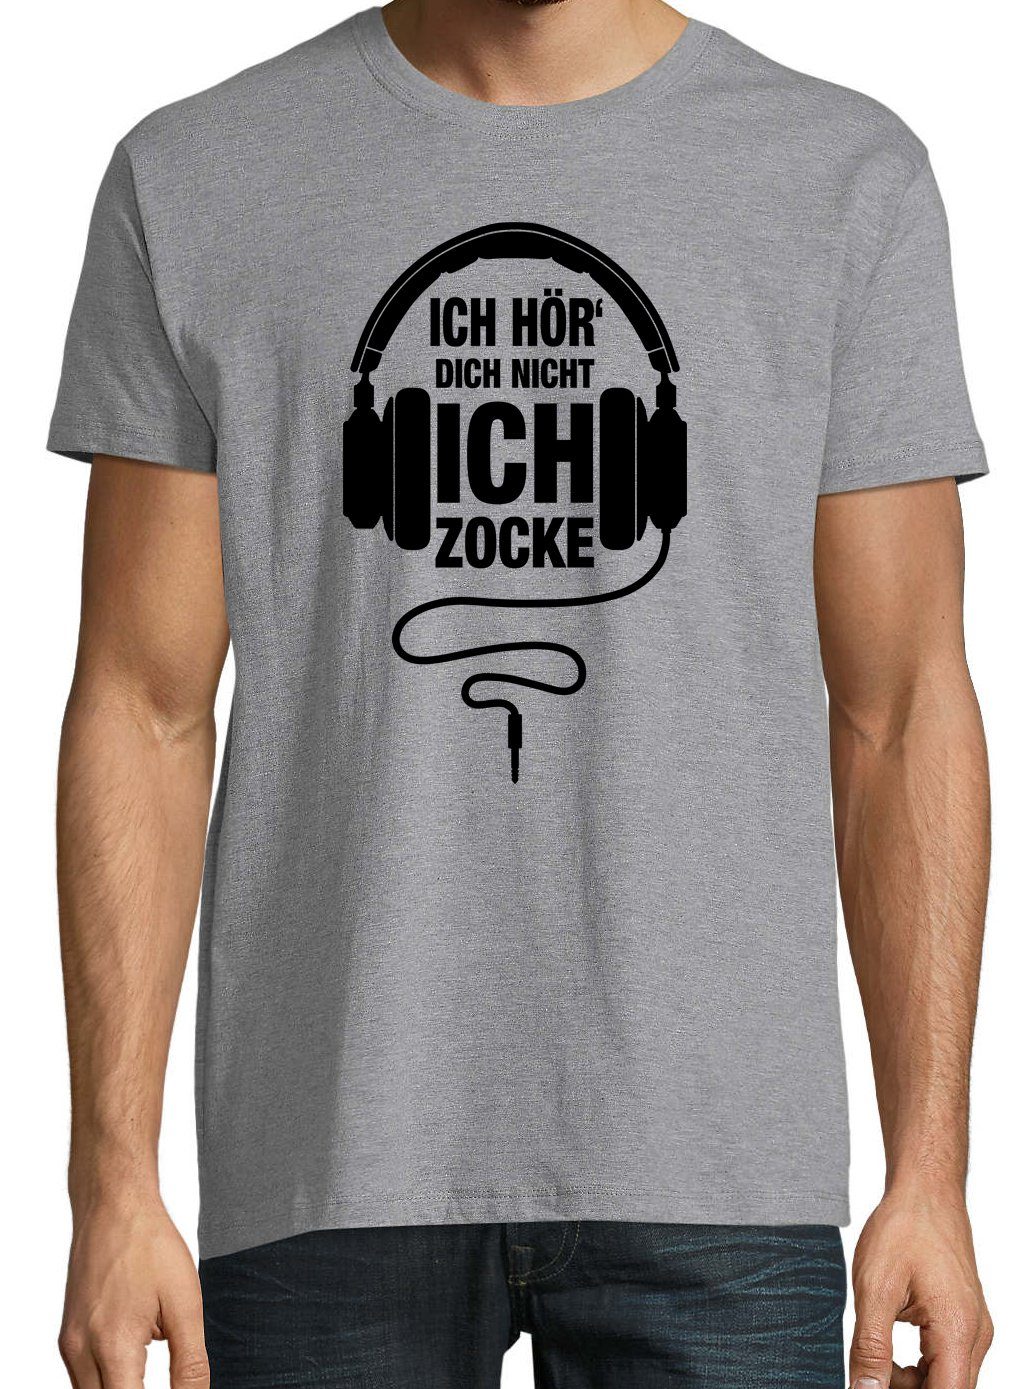 Youth Zocker mit Ich Designz Herren Grau lustigem Zocke T-Shirt Shirt Frontprint